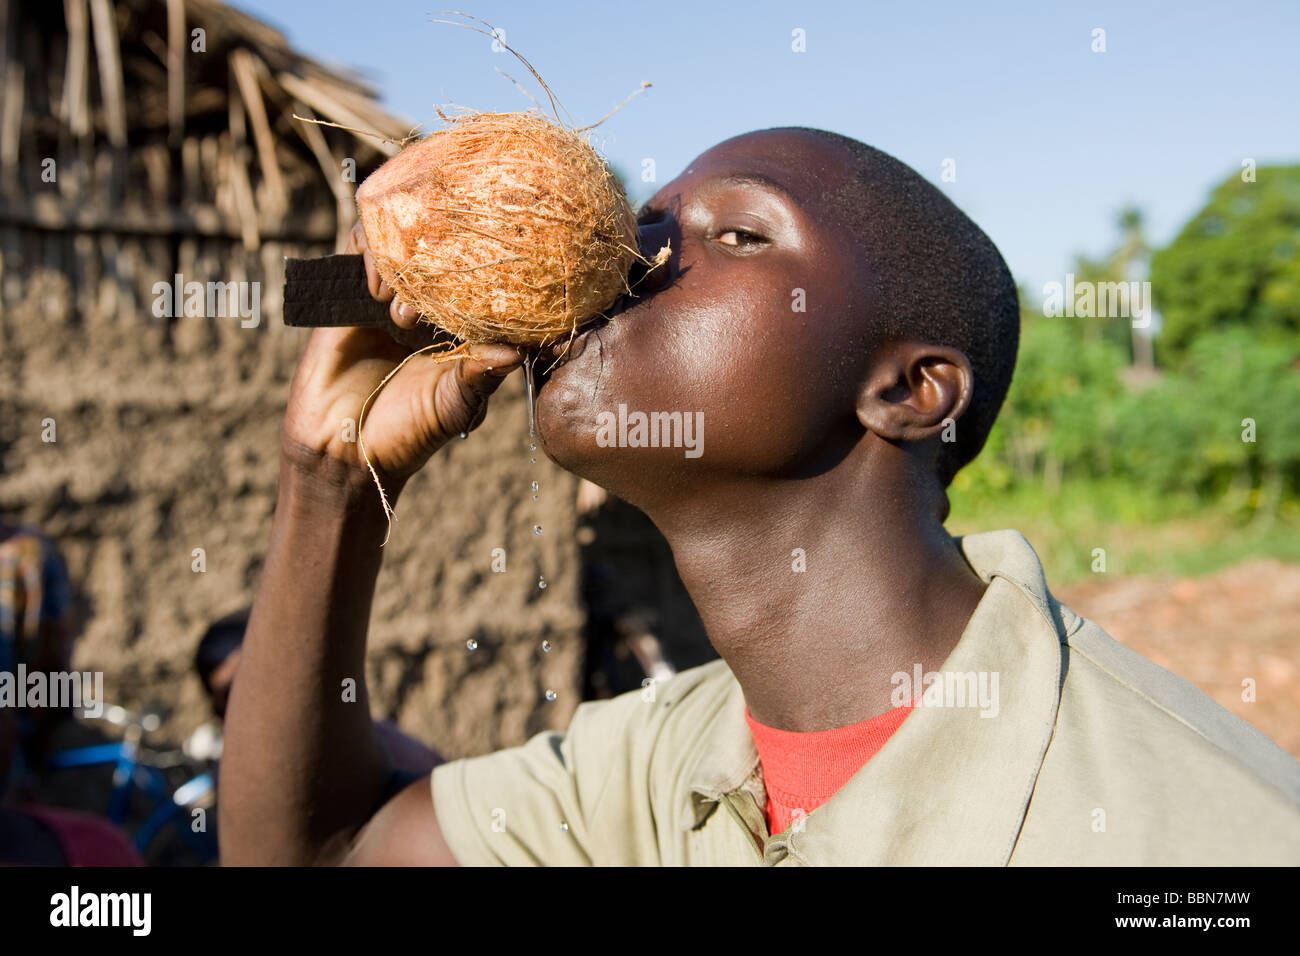 A man drinks fresh coconut milk Quelimane Mozambique Stock Photo